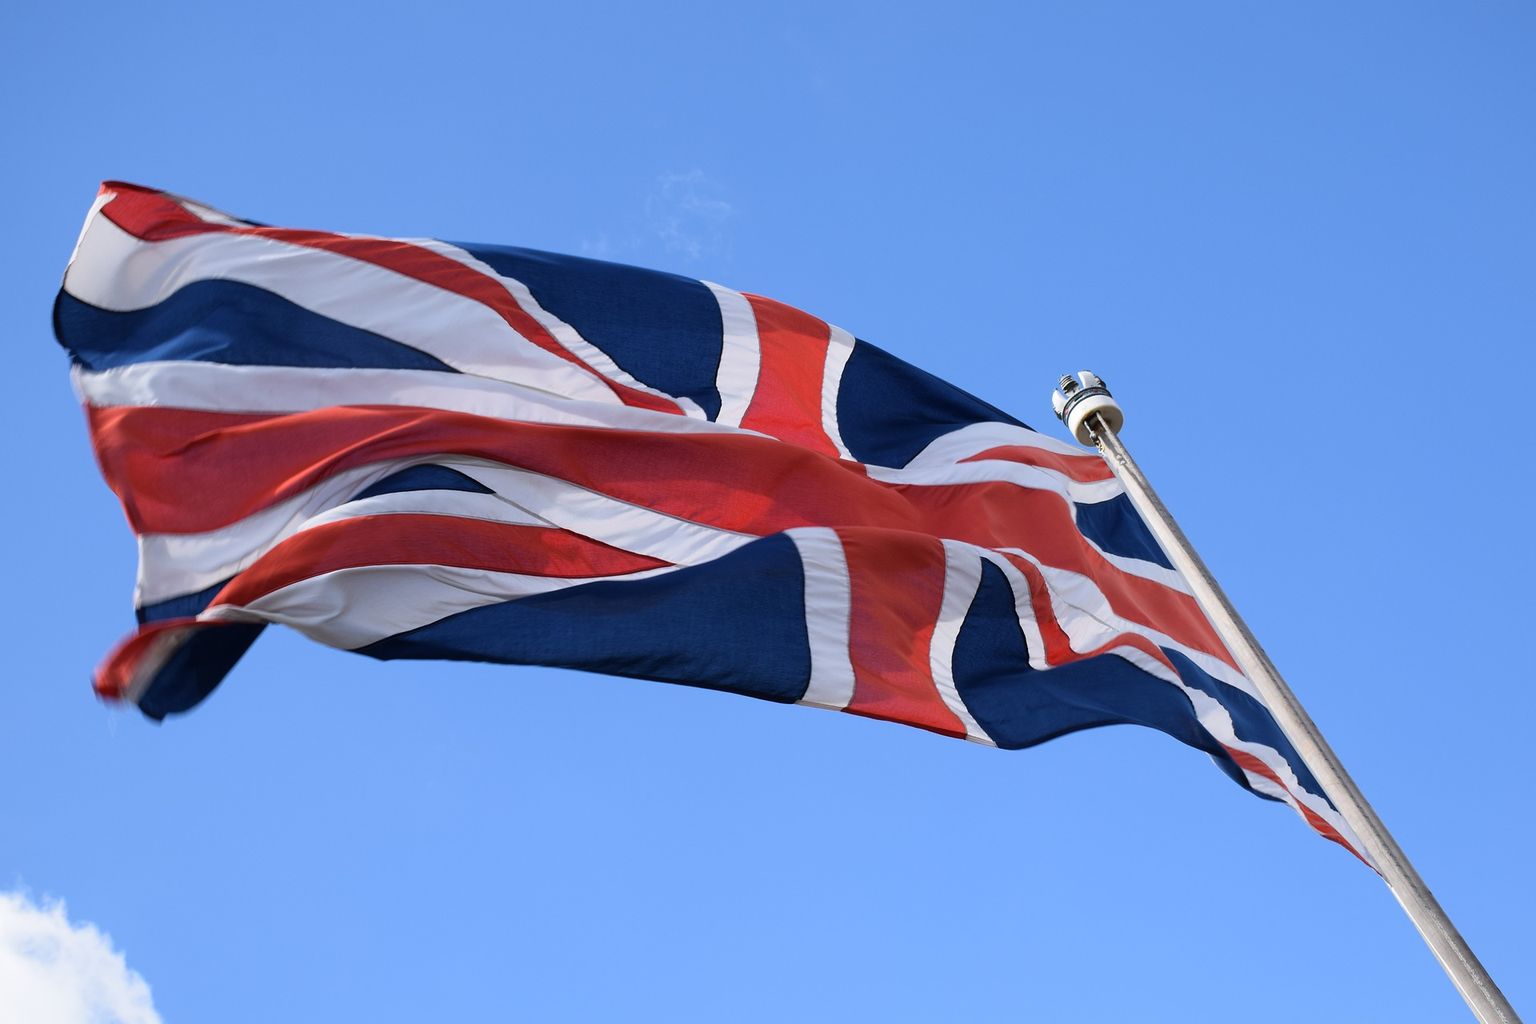 Lielbritānijas karogs. Ilustratīvs attēls.